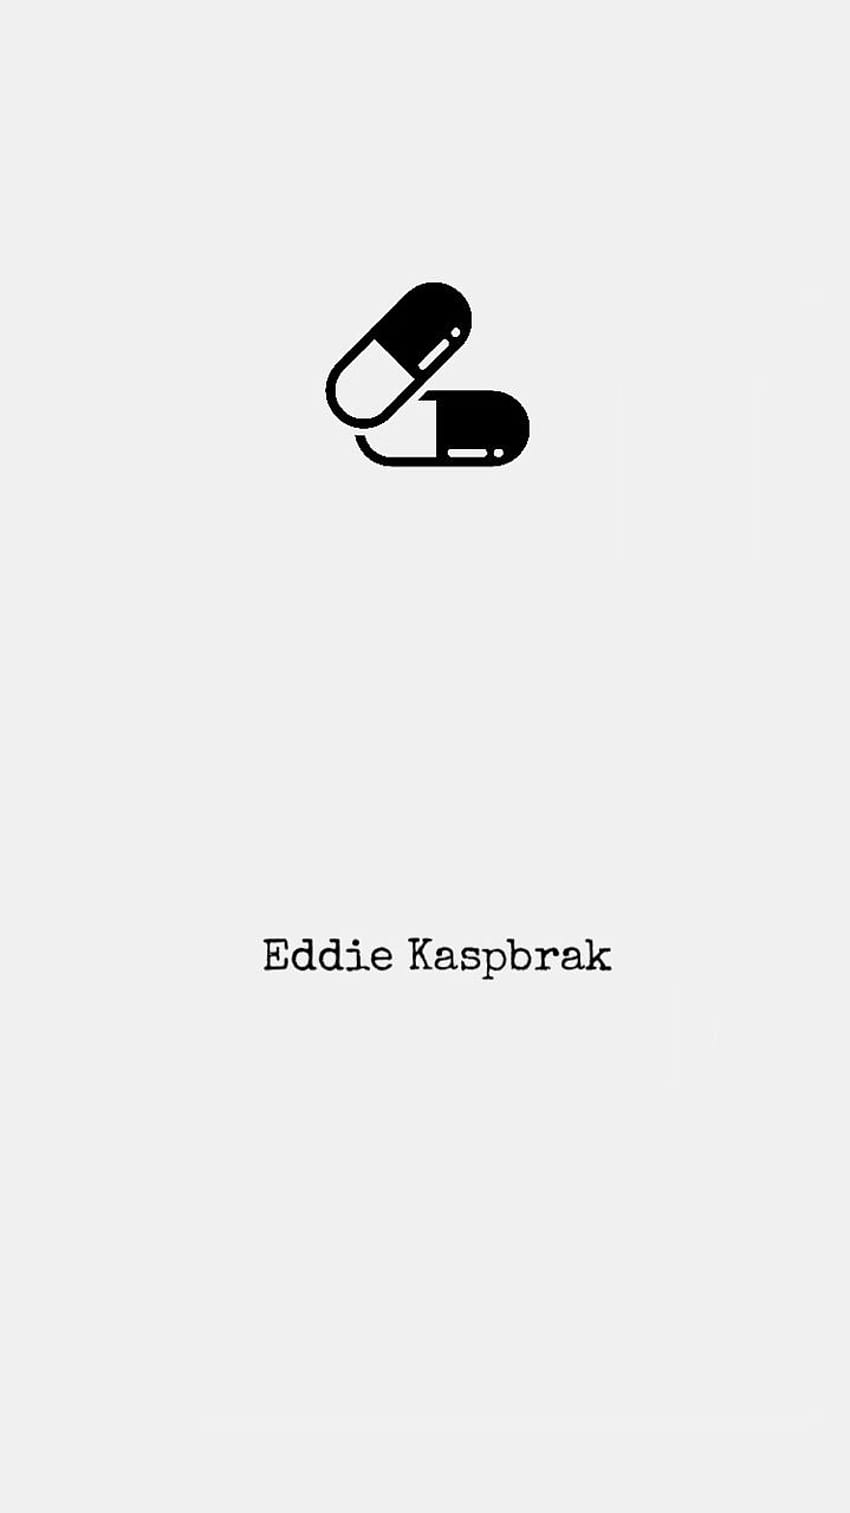 Beep Beep, Eddie Kaspbrak HD phone wallpaper